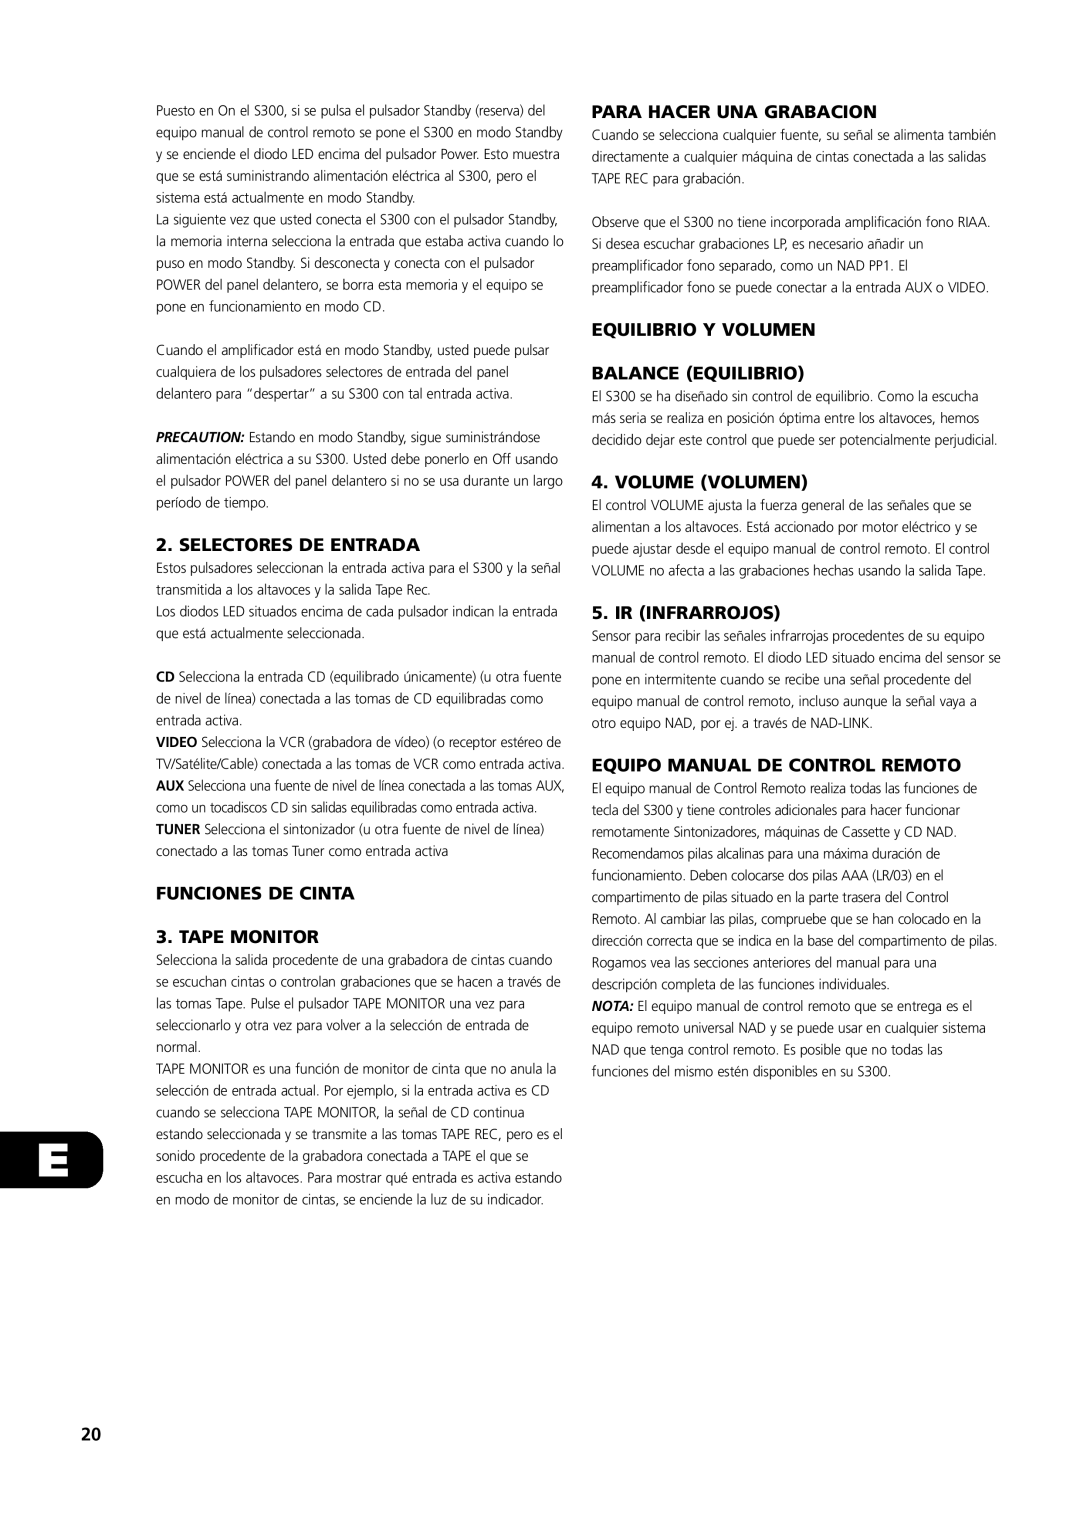 NAD S300 owner manual Selectores De Entrada, FUNCIONES DE CINTA 3. TAPE MONITOR, Para Hacer Una Grabacion, Volume Volumen 